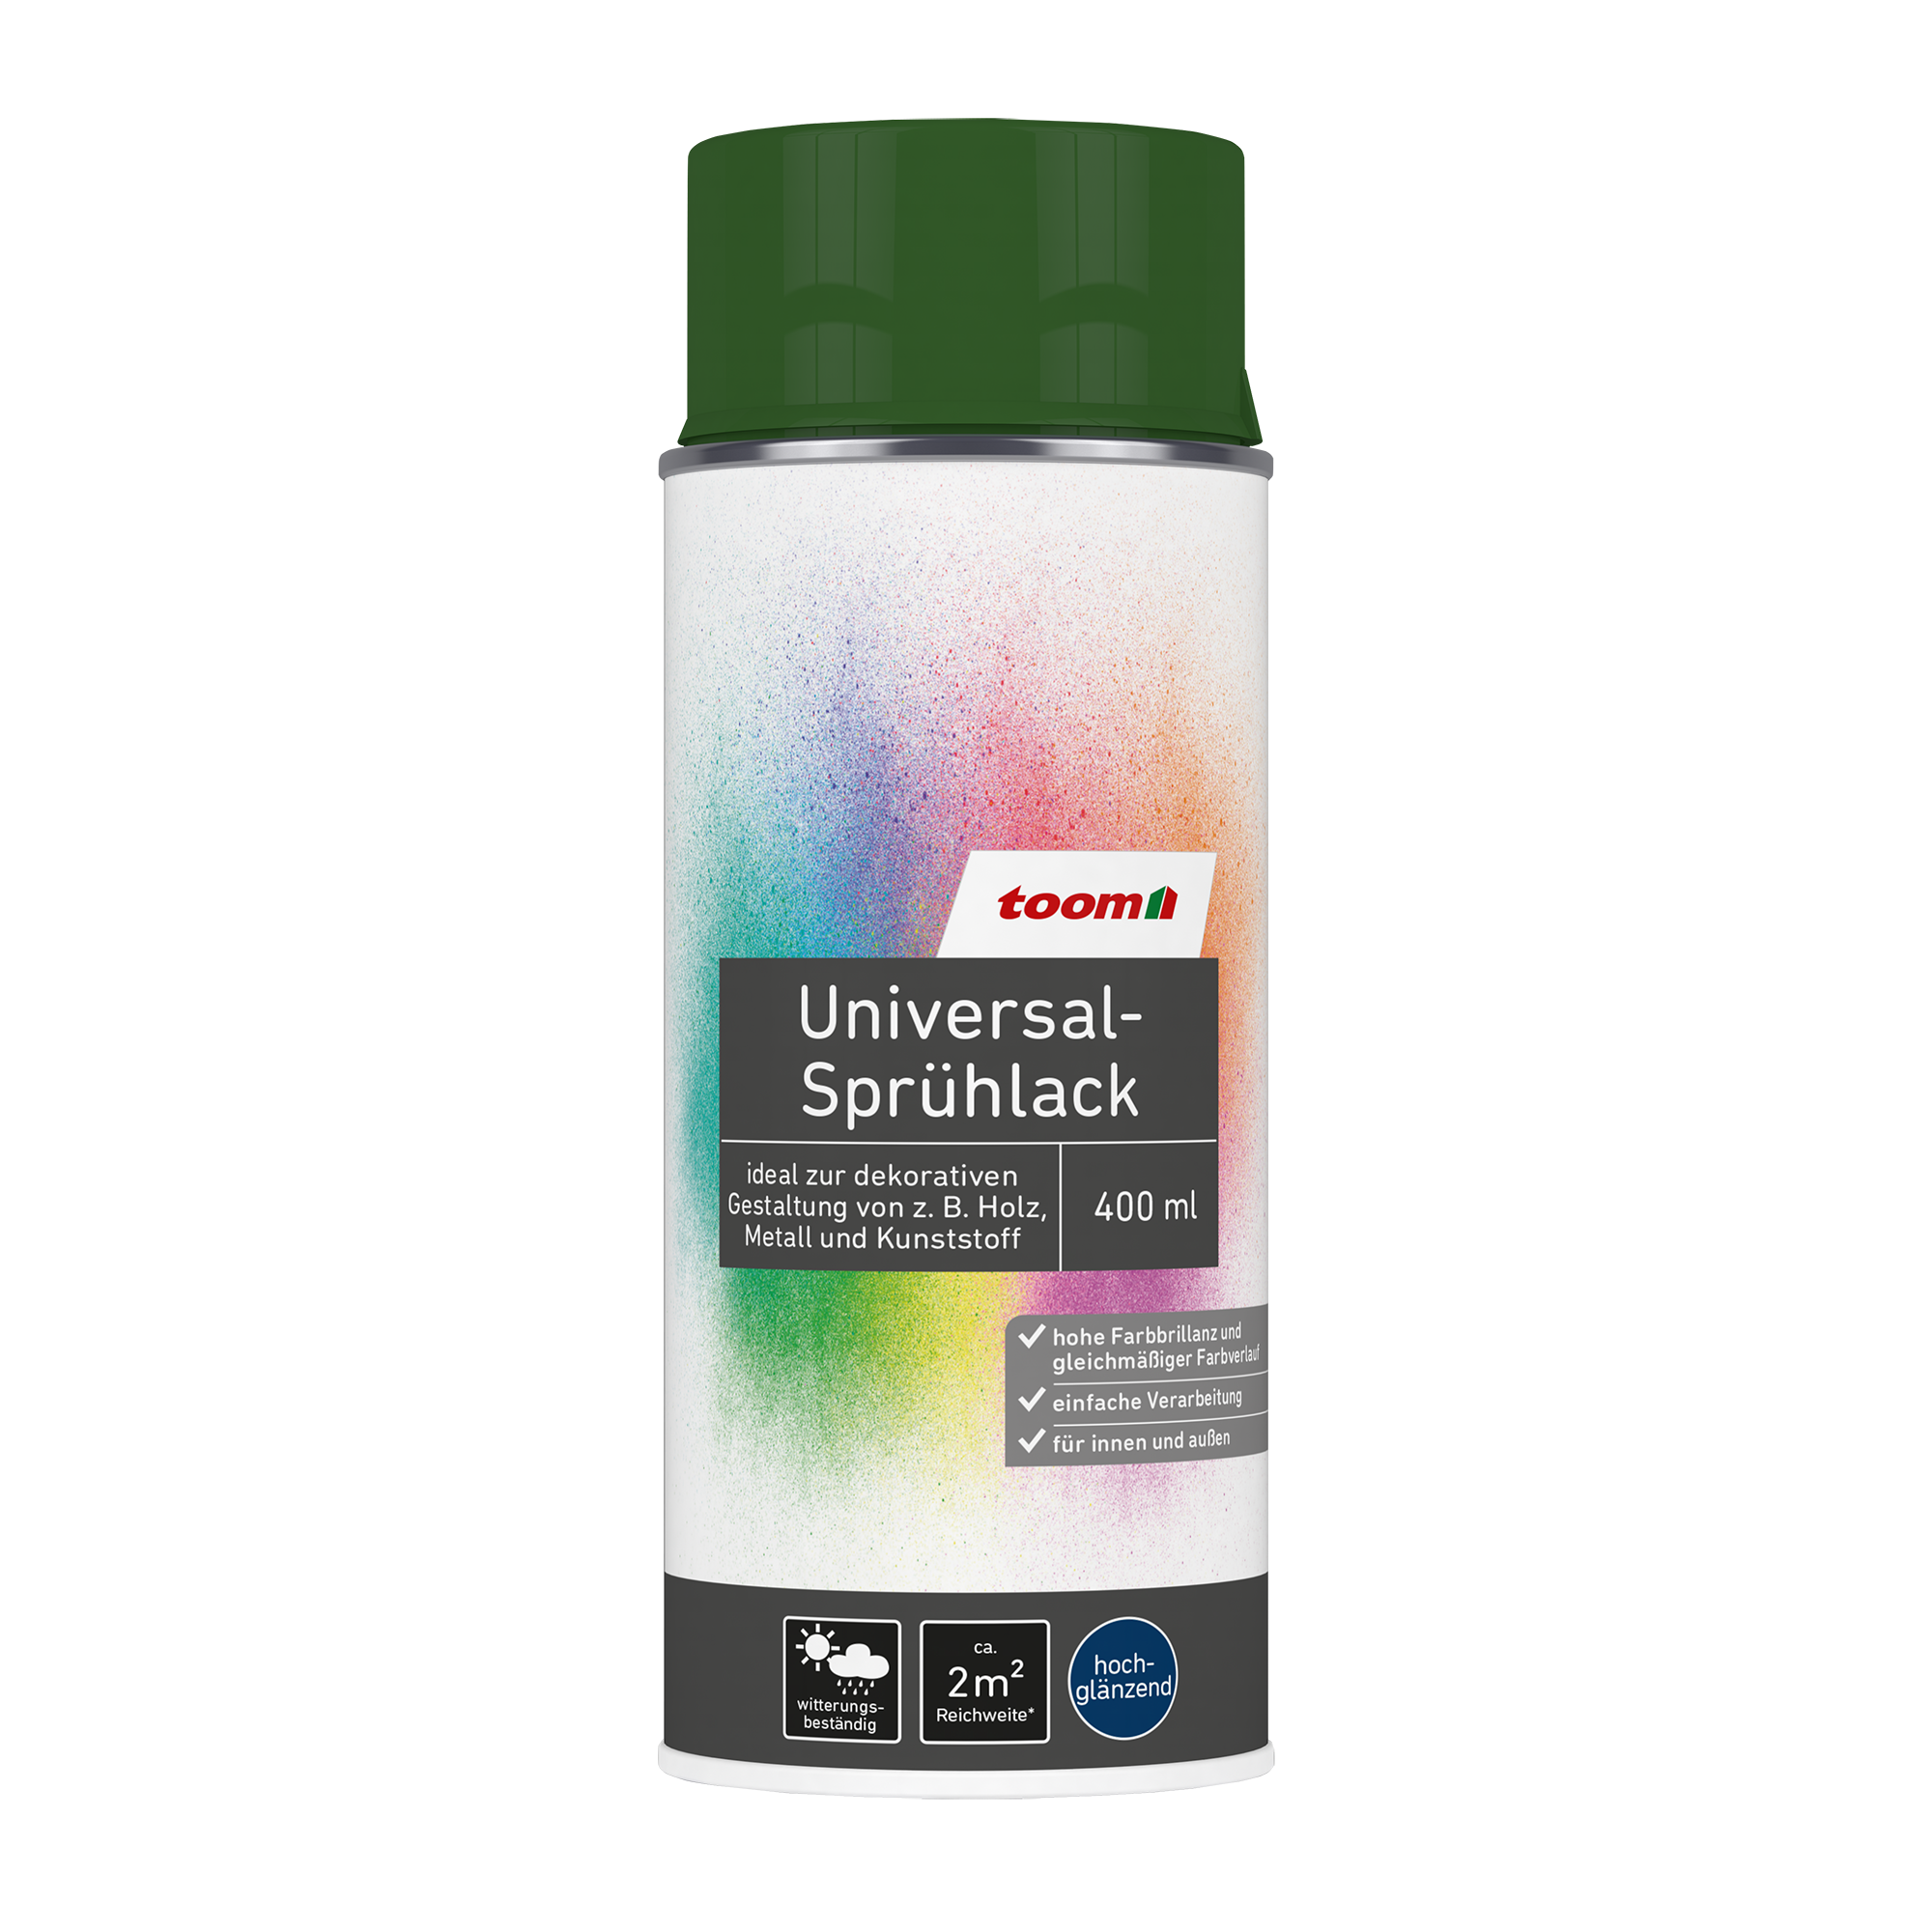 Universal-Sprühlack 'Blätterwald' laubgrün glänzend 400 ml + product picture